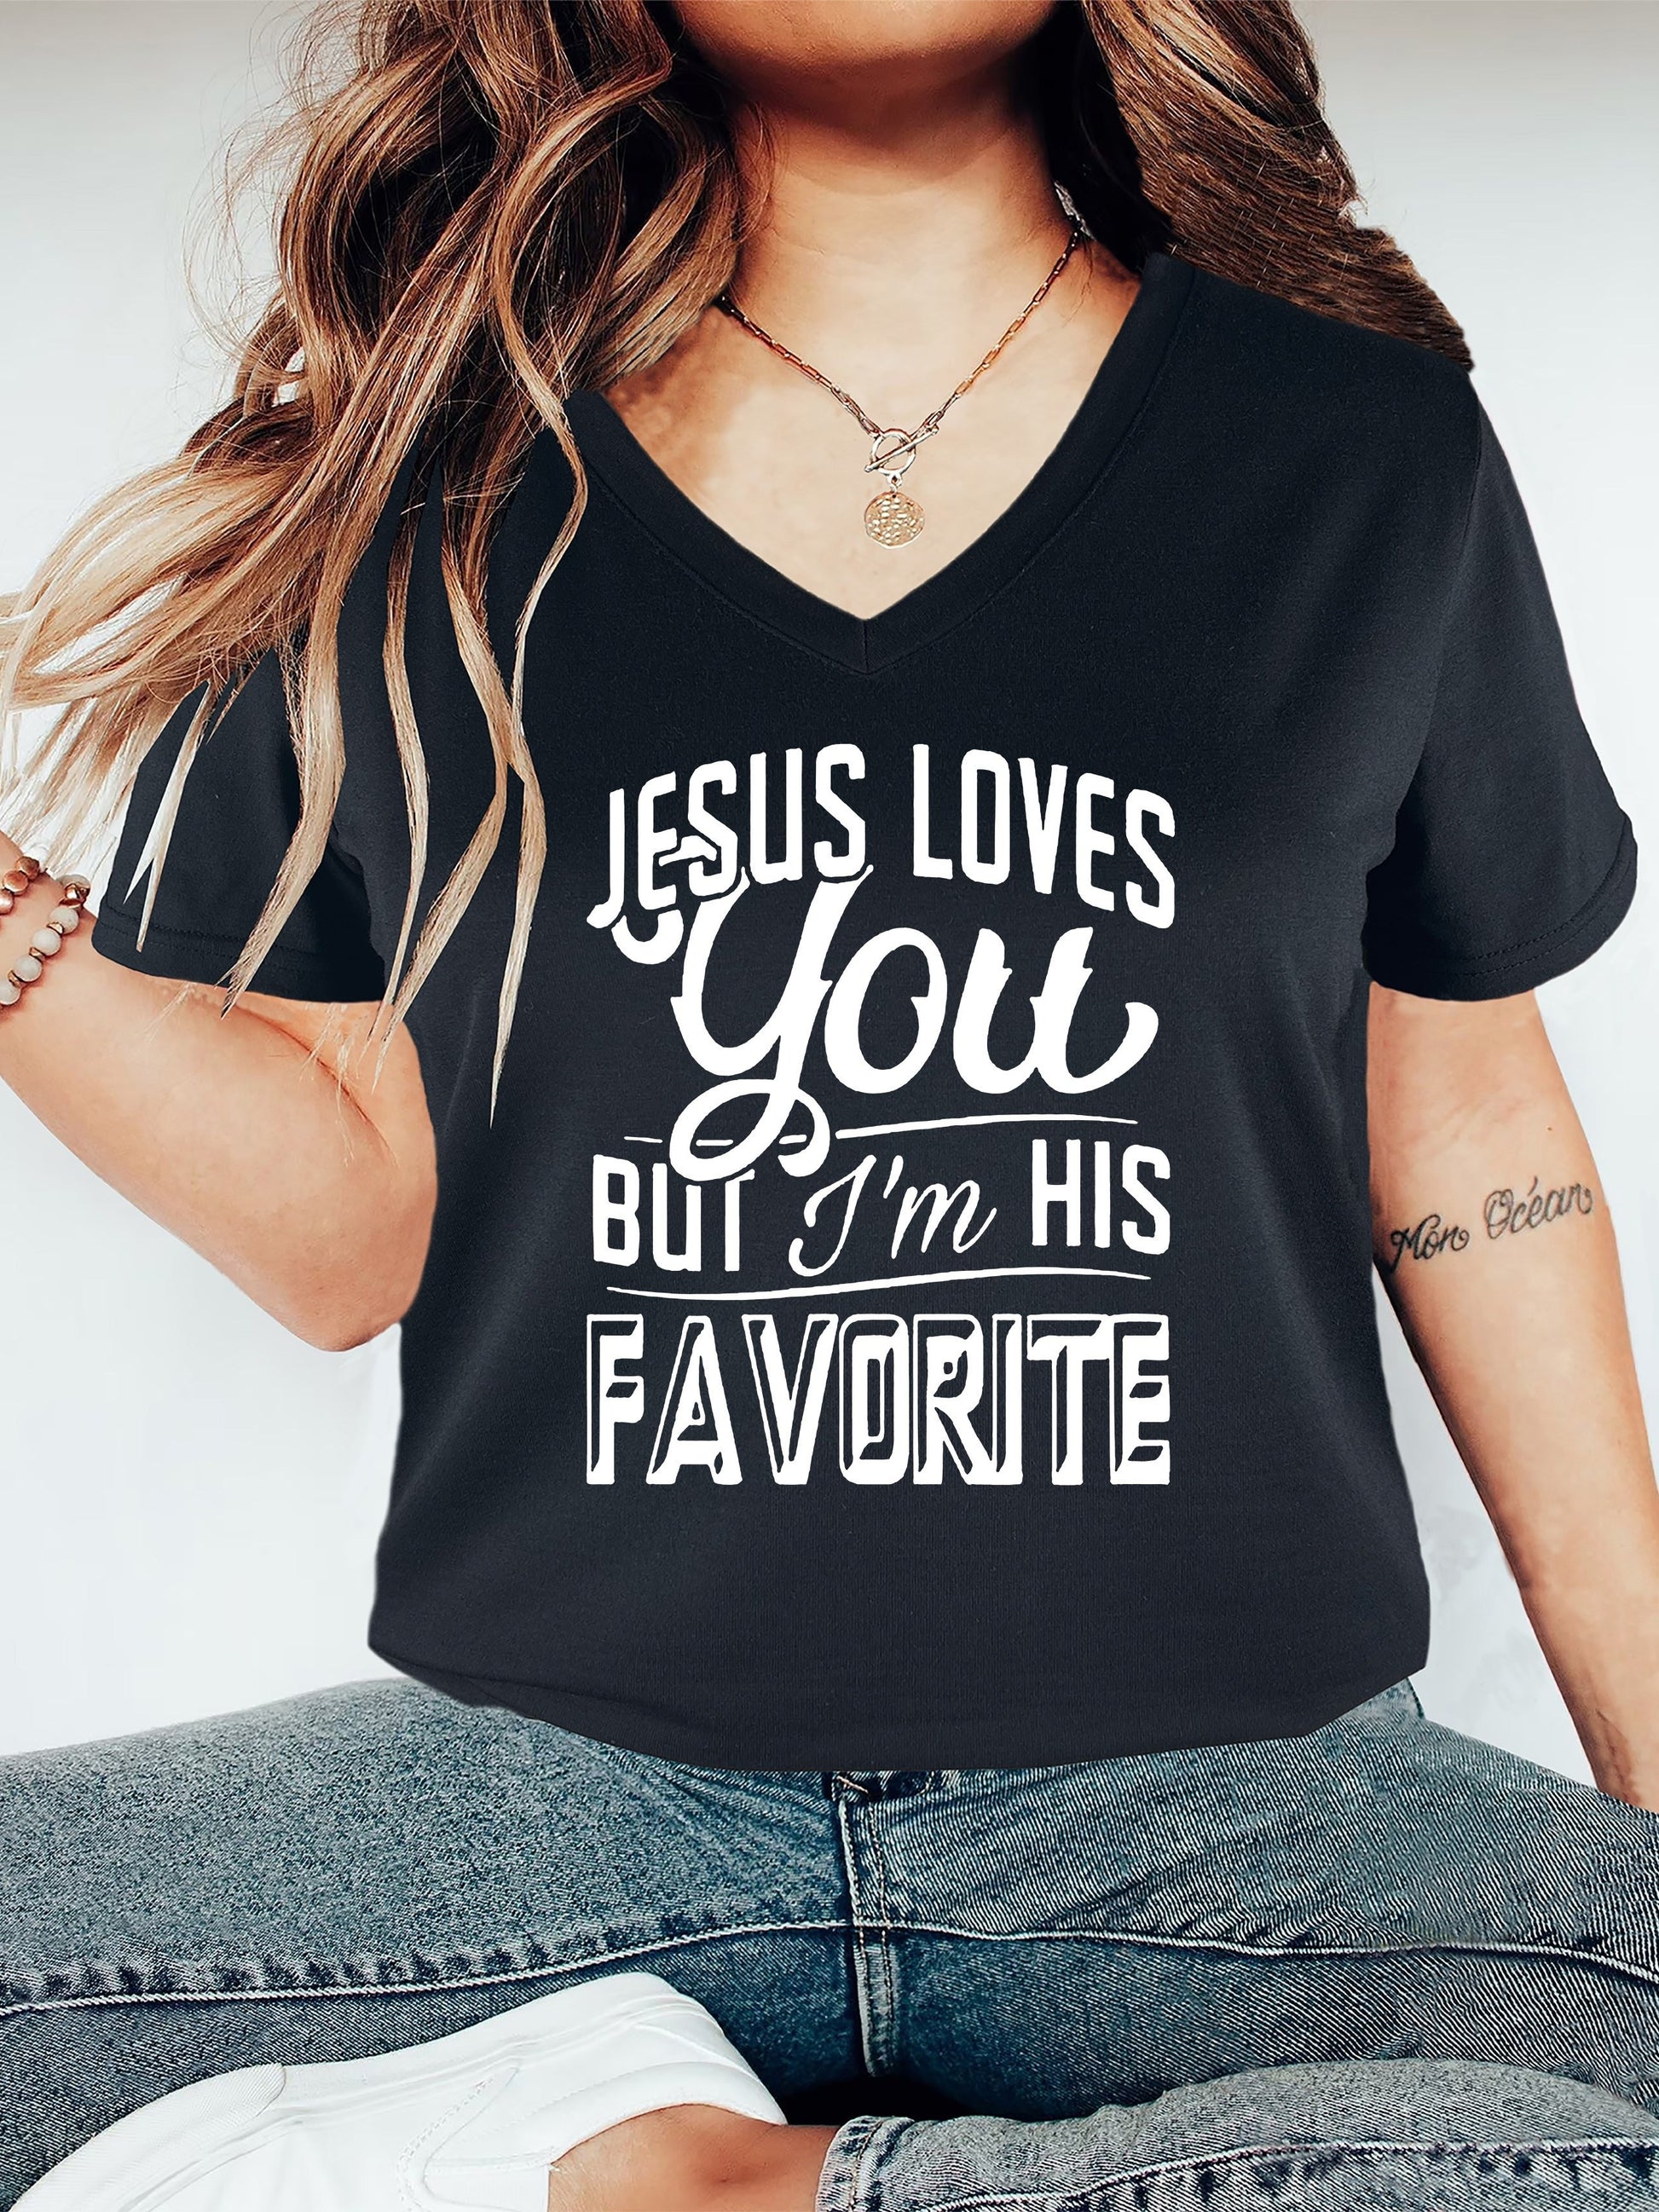 Jesus Loves You But I'm His Favorite V-neck Women's Christian T-shirt claimedbygoddesigns